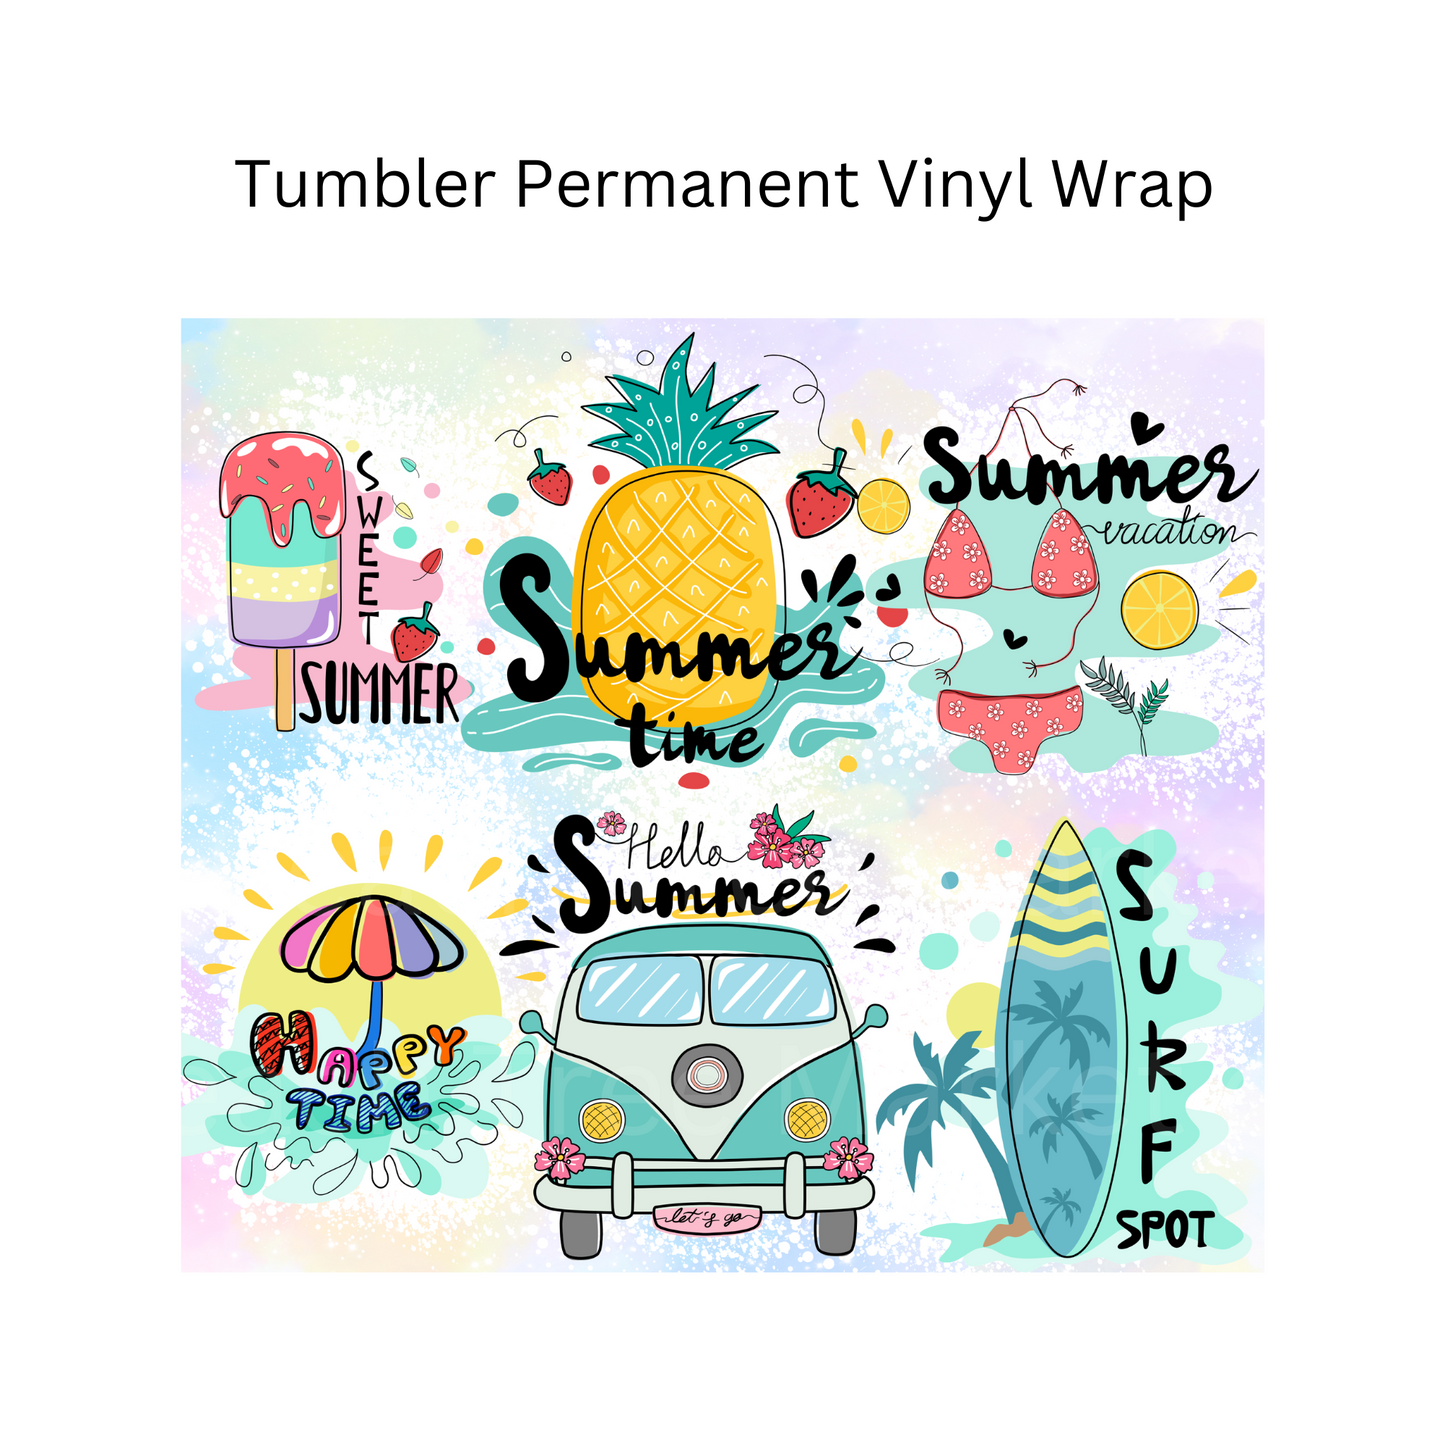 Beach Tumbler Permanent Vinyl Wrap